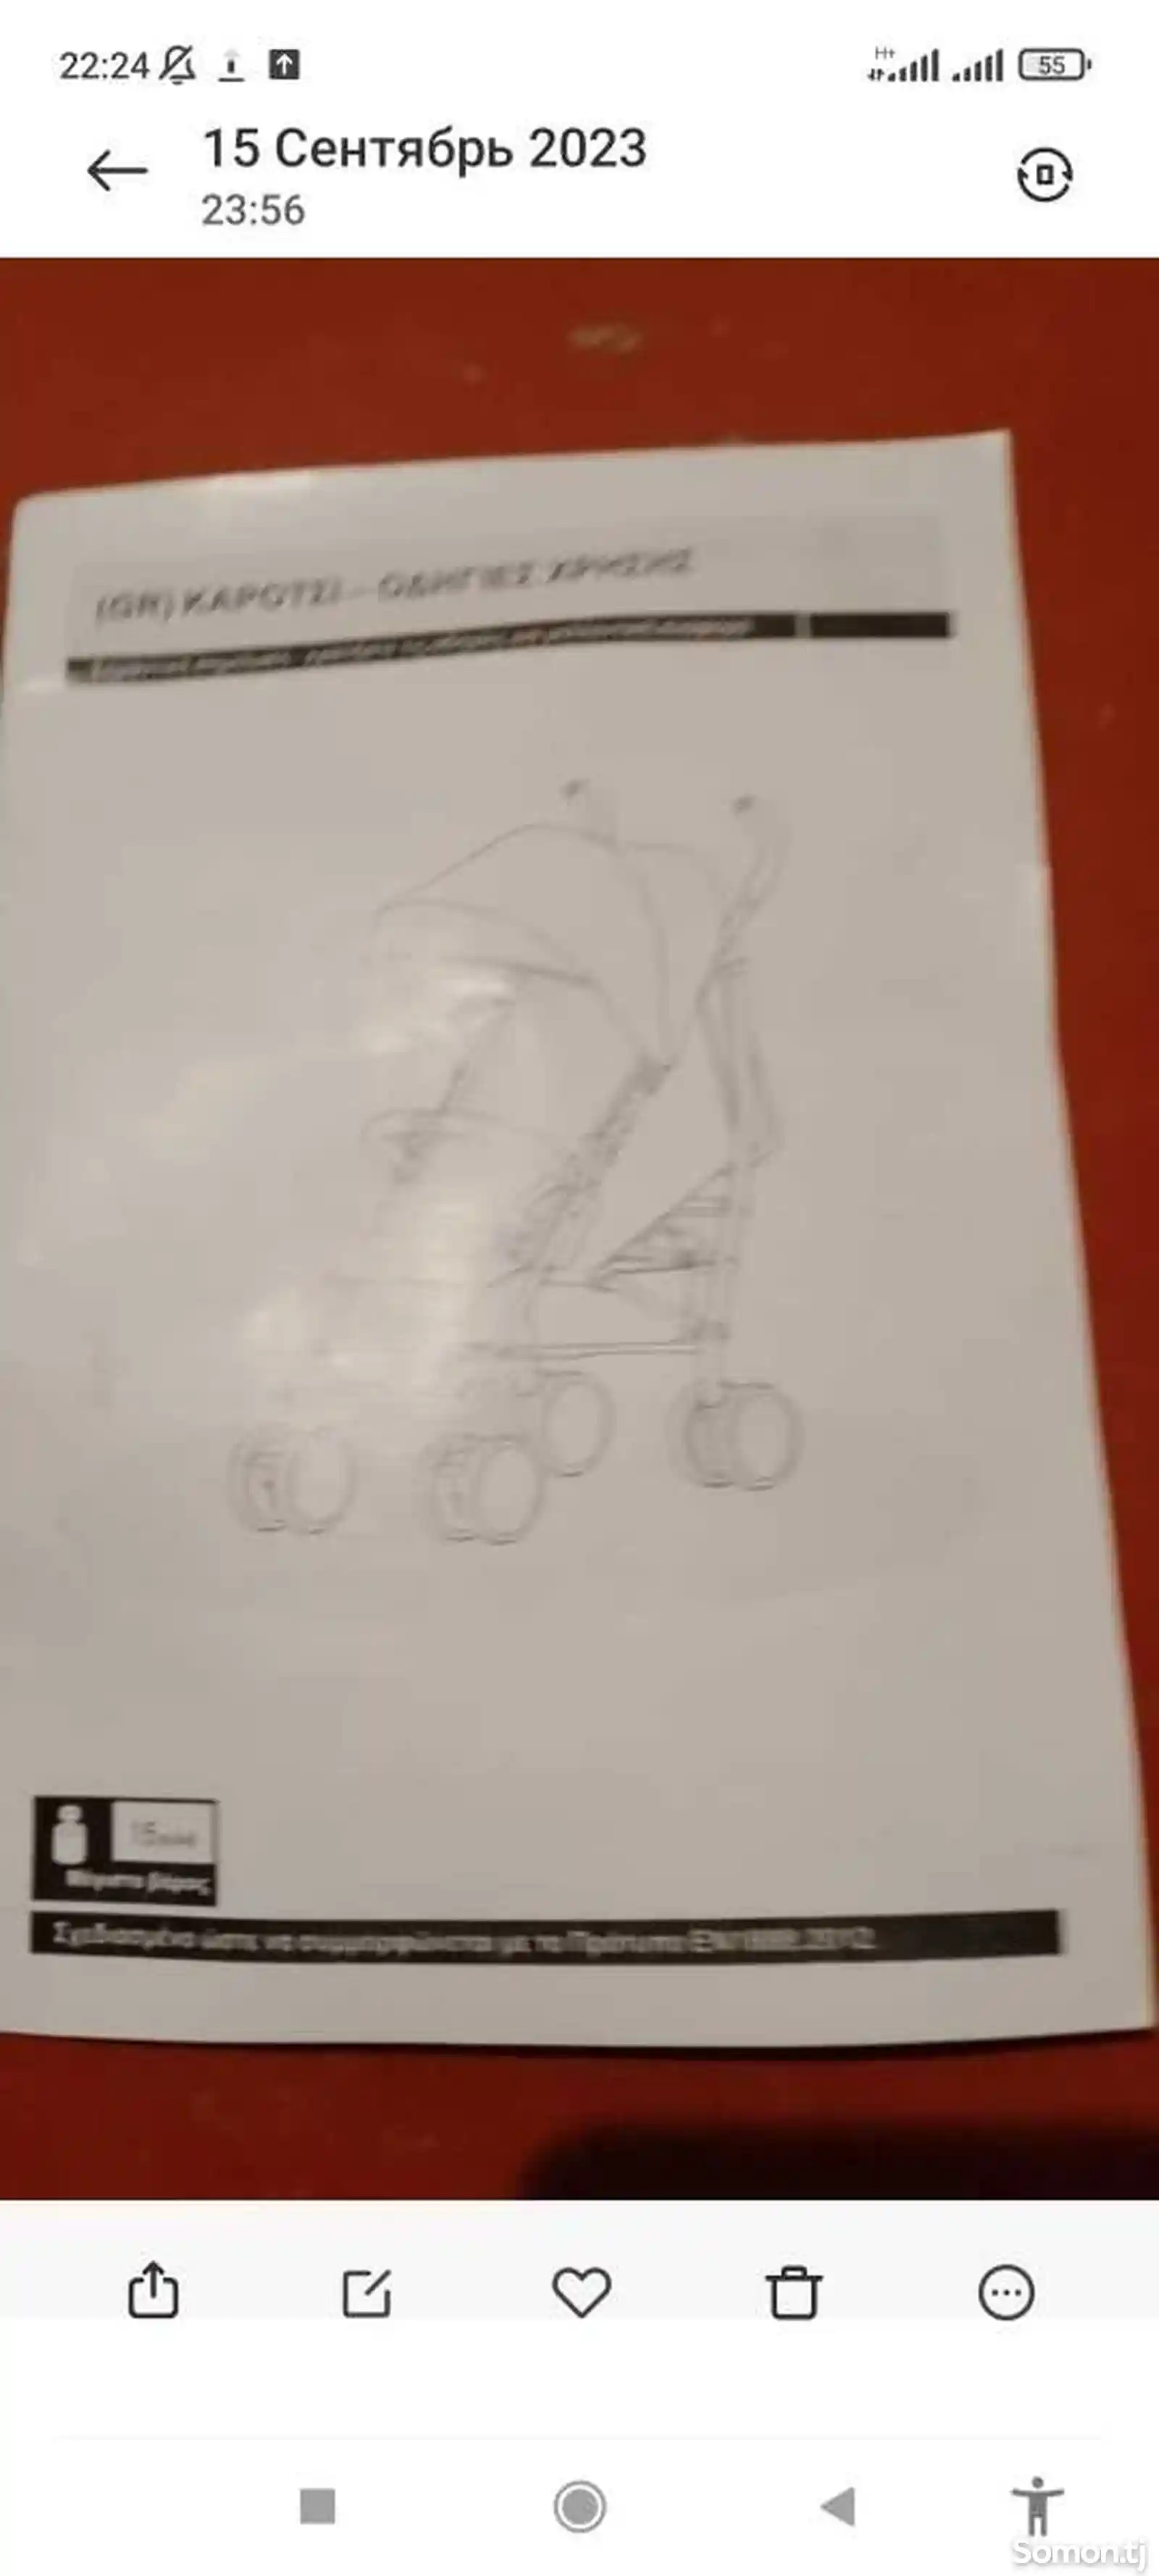 Детская коляска-6